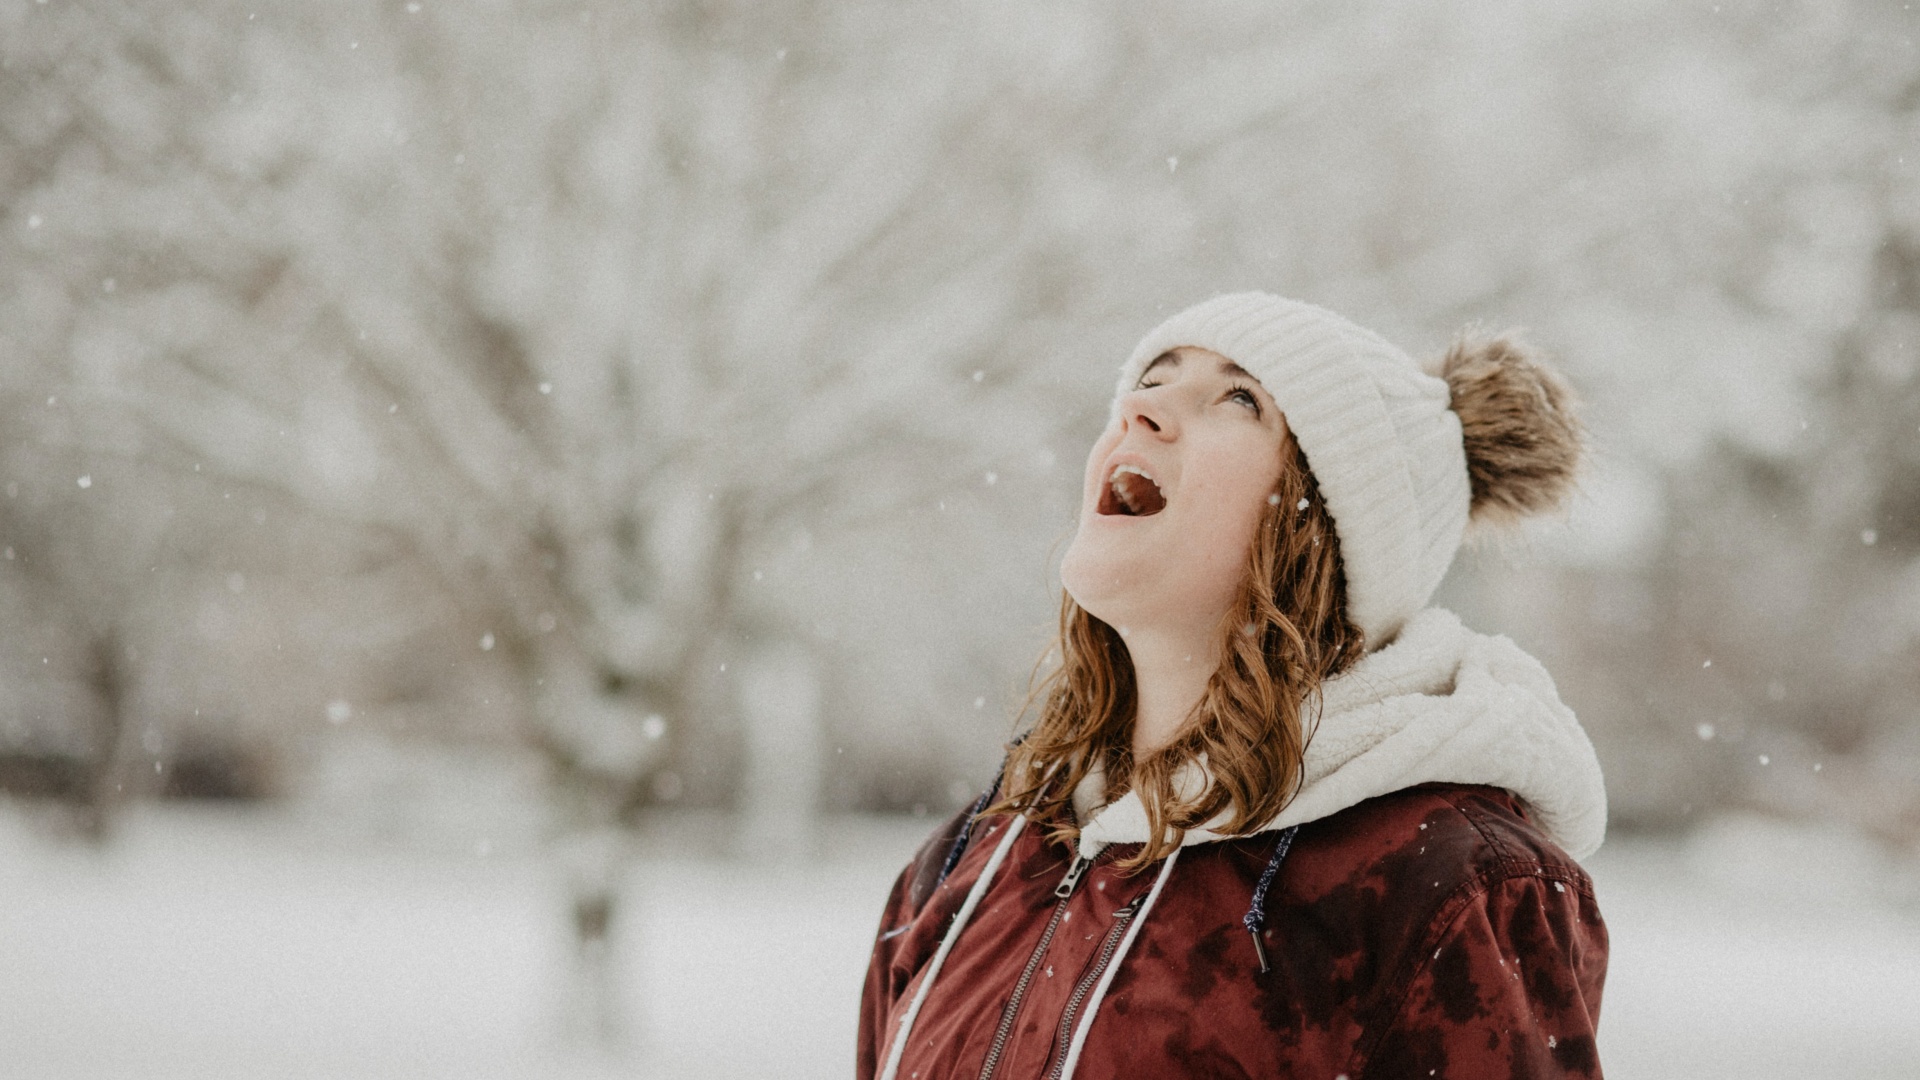 Csodálkozva figyeli a havazást egy fiatal nő